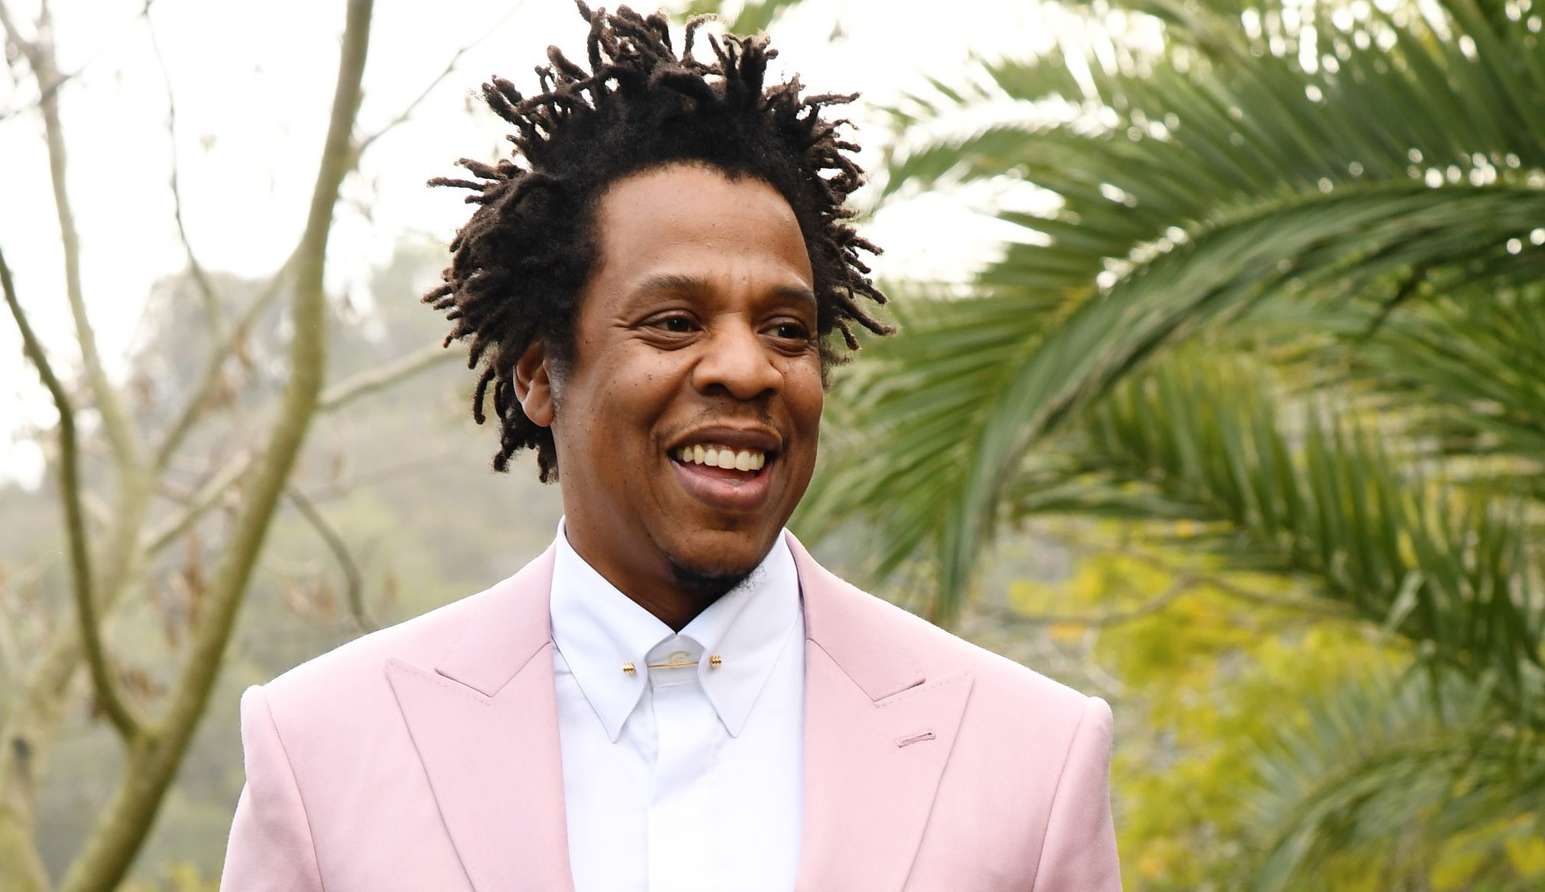 Jay-Z possui mais de 2 bilhões em sua fortuna após vender participação majoritária no conhaque D'Usse